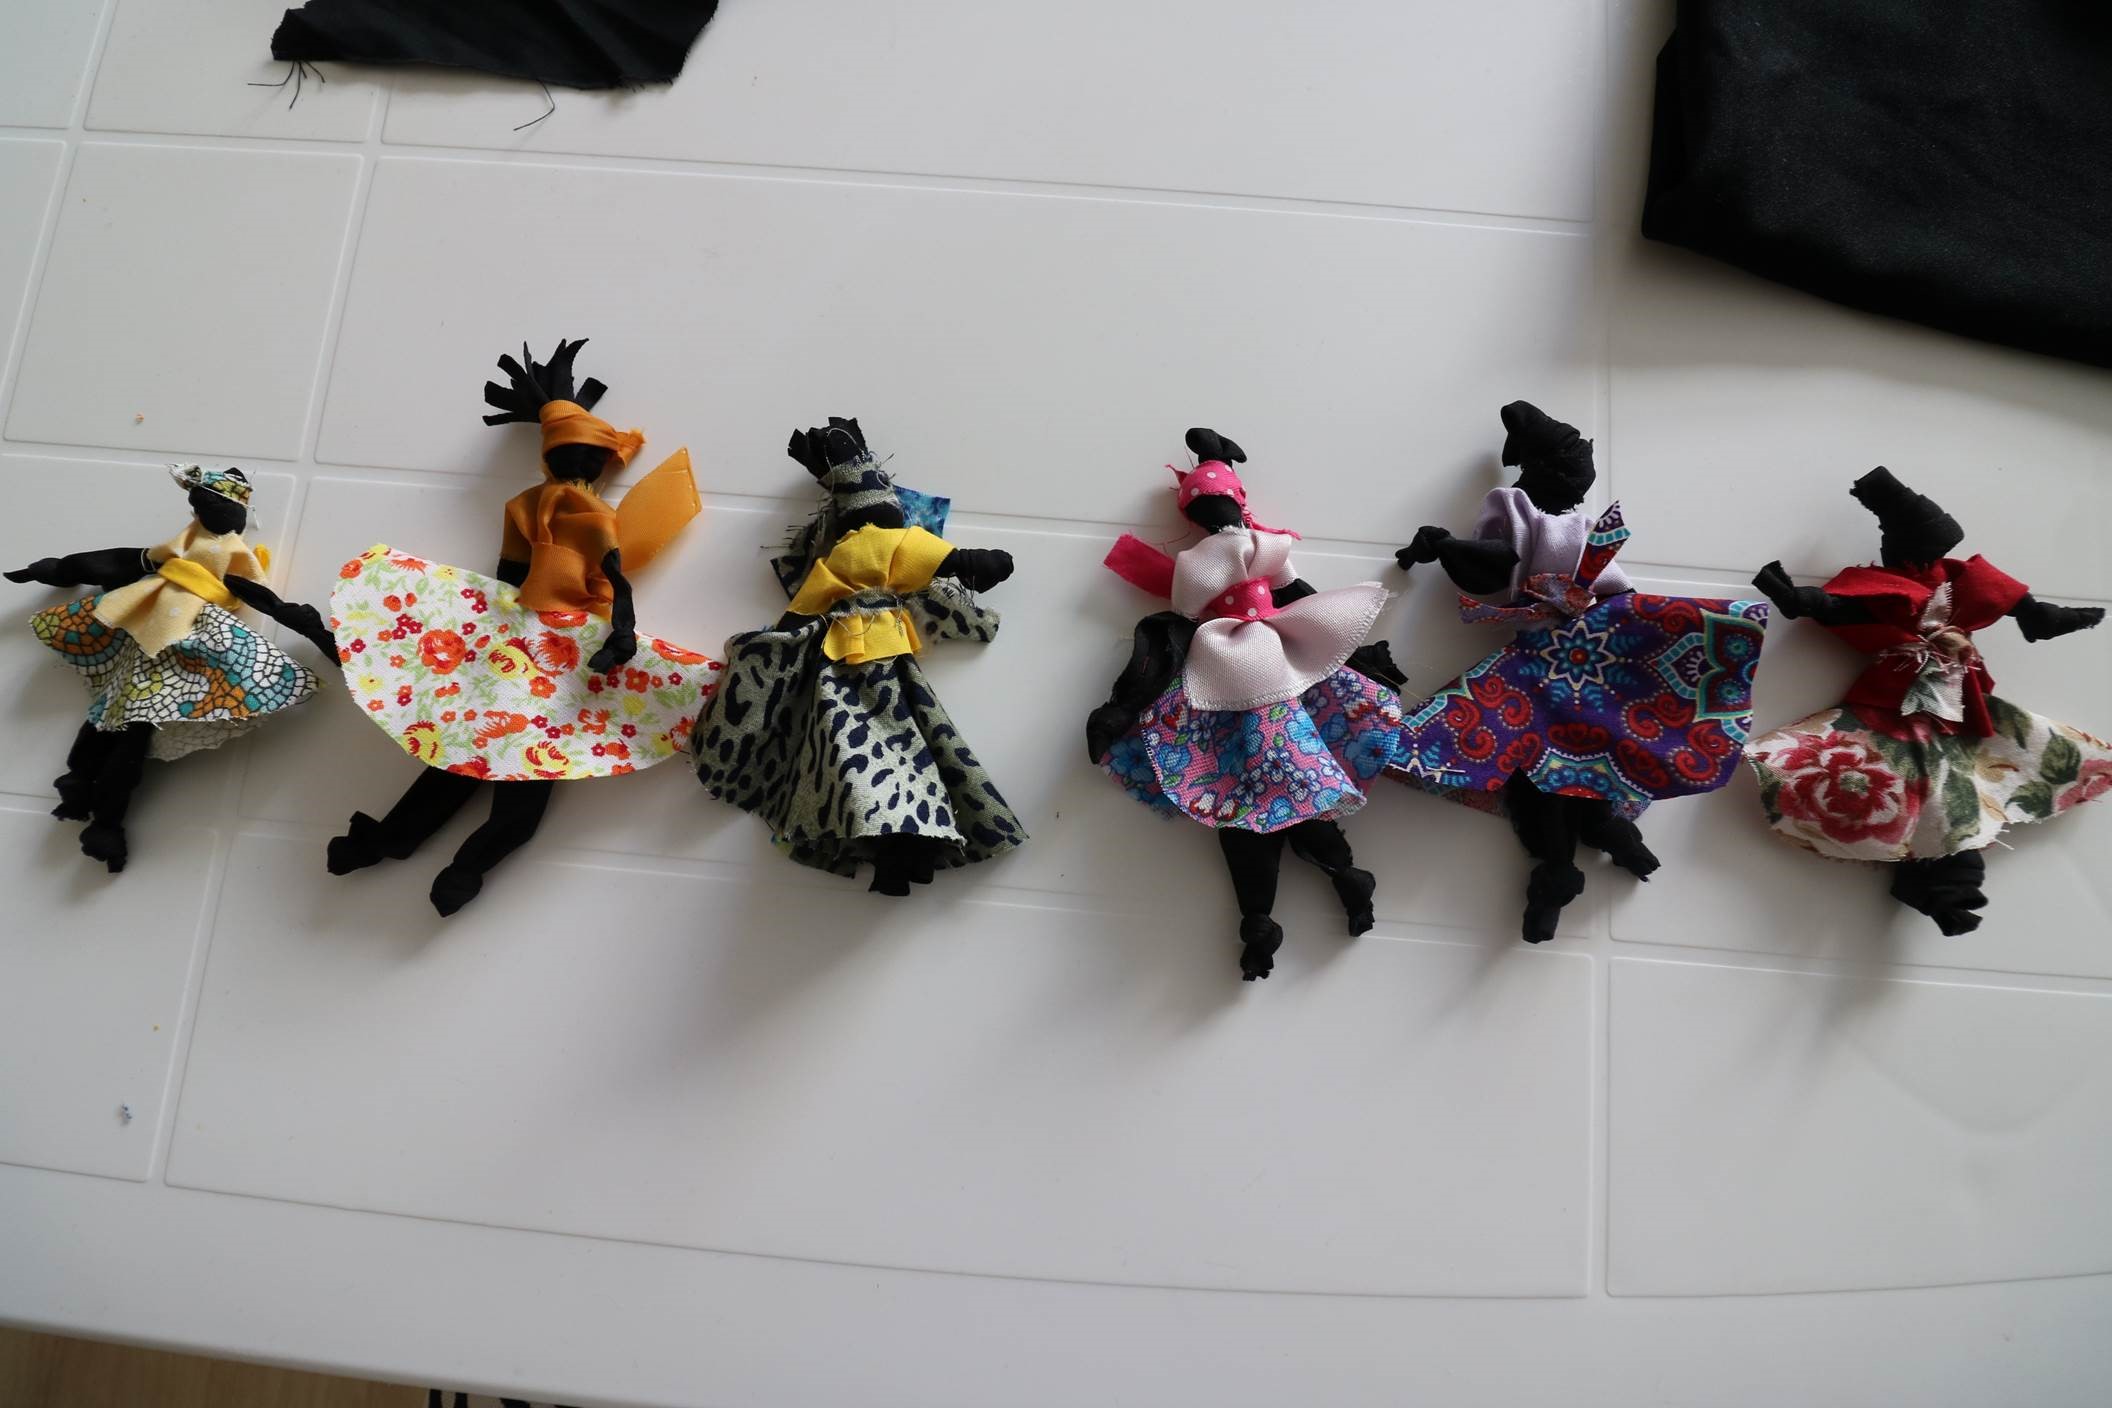 #Paracegover Na imagem estão seis bonecas feitas com retalhos de tecidos.